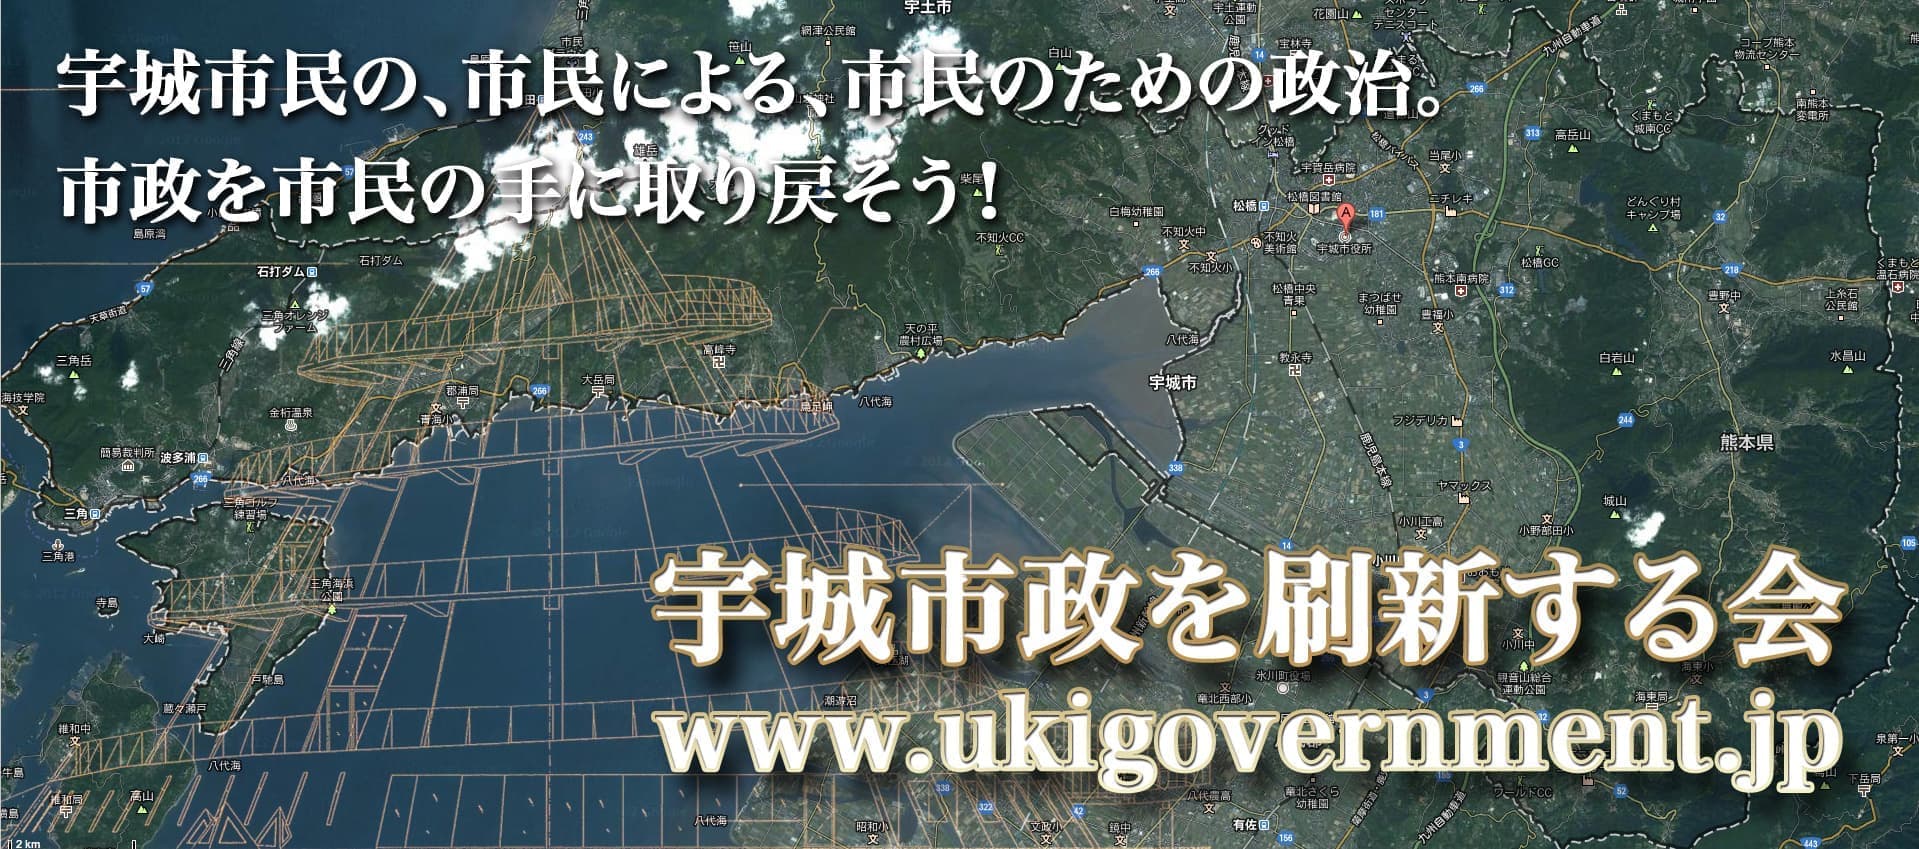 宇城市民の､市民による、市民のための政治。「宇城市政を刷新する会」 公式サイト http://www.ukigovernment.jp/市政を市民の手に取り戻そう！